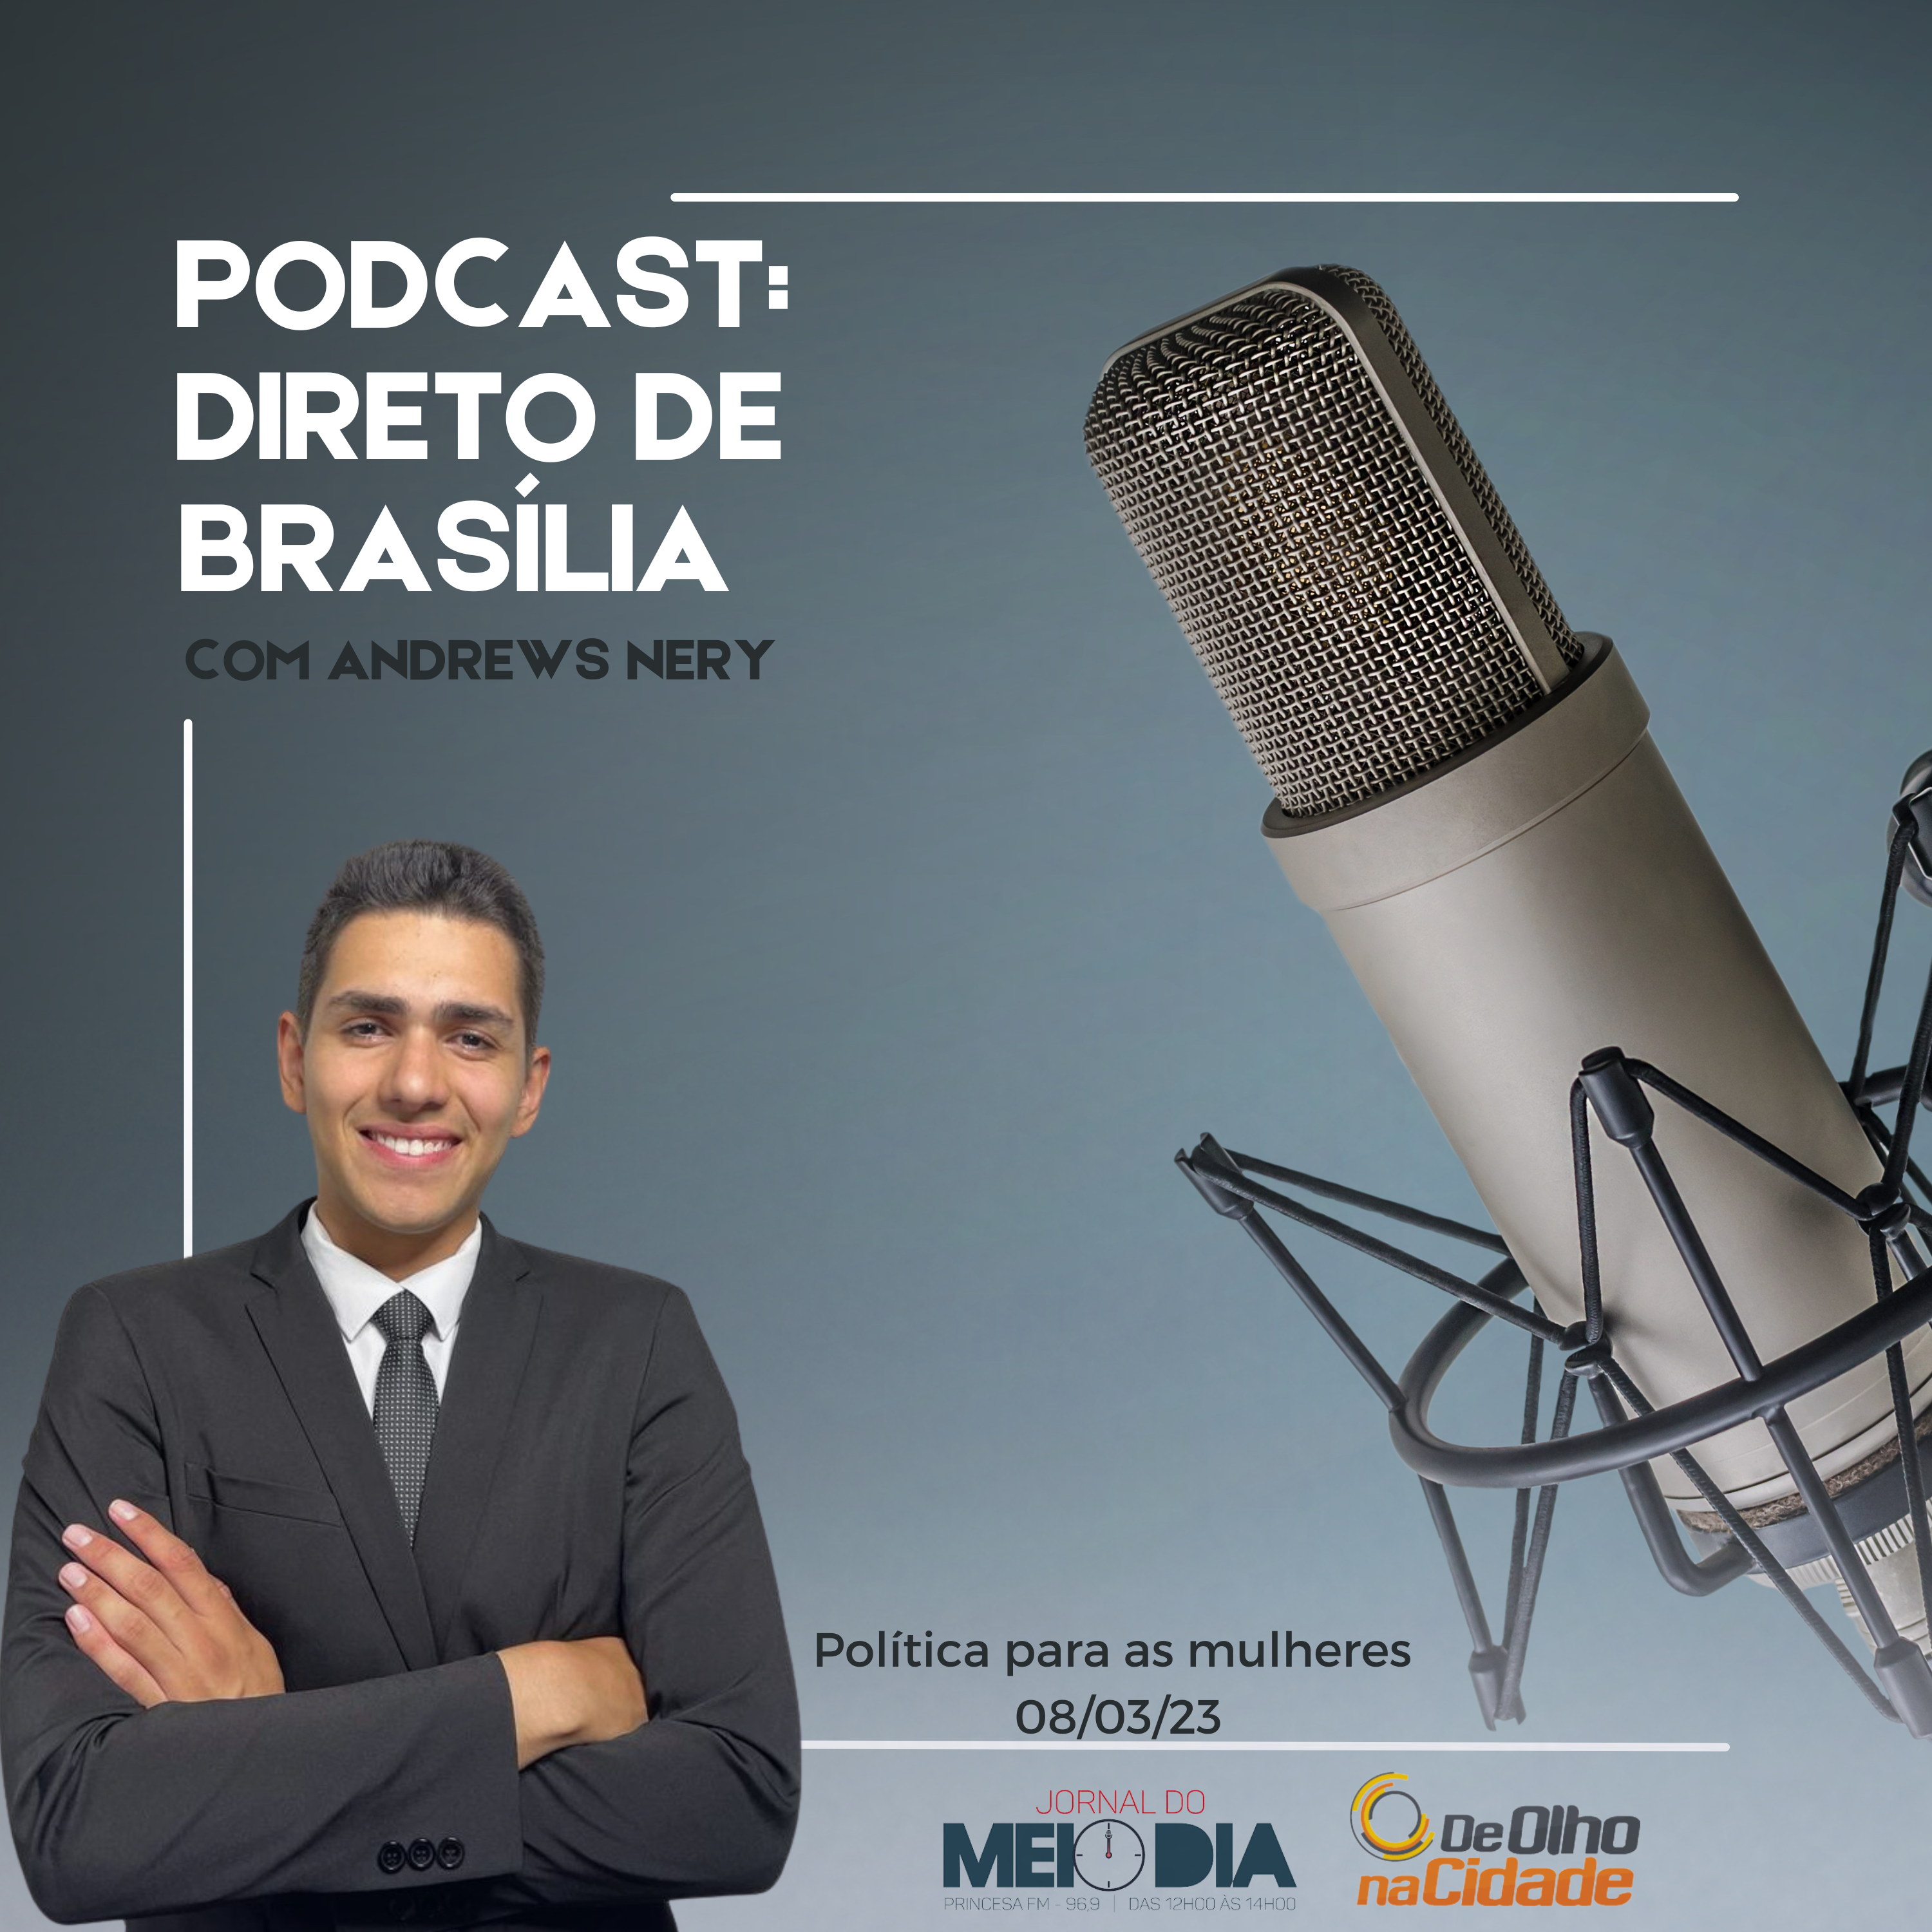 Podcast: Direto de Brasília com Andrews Nery 